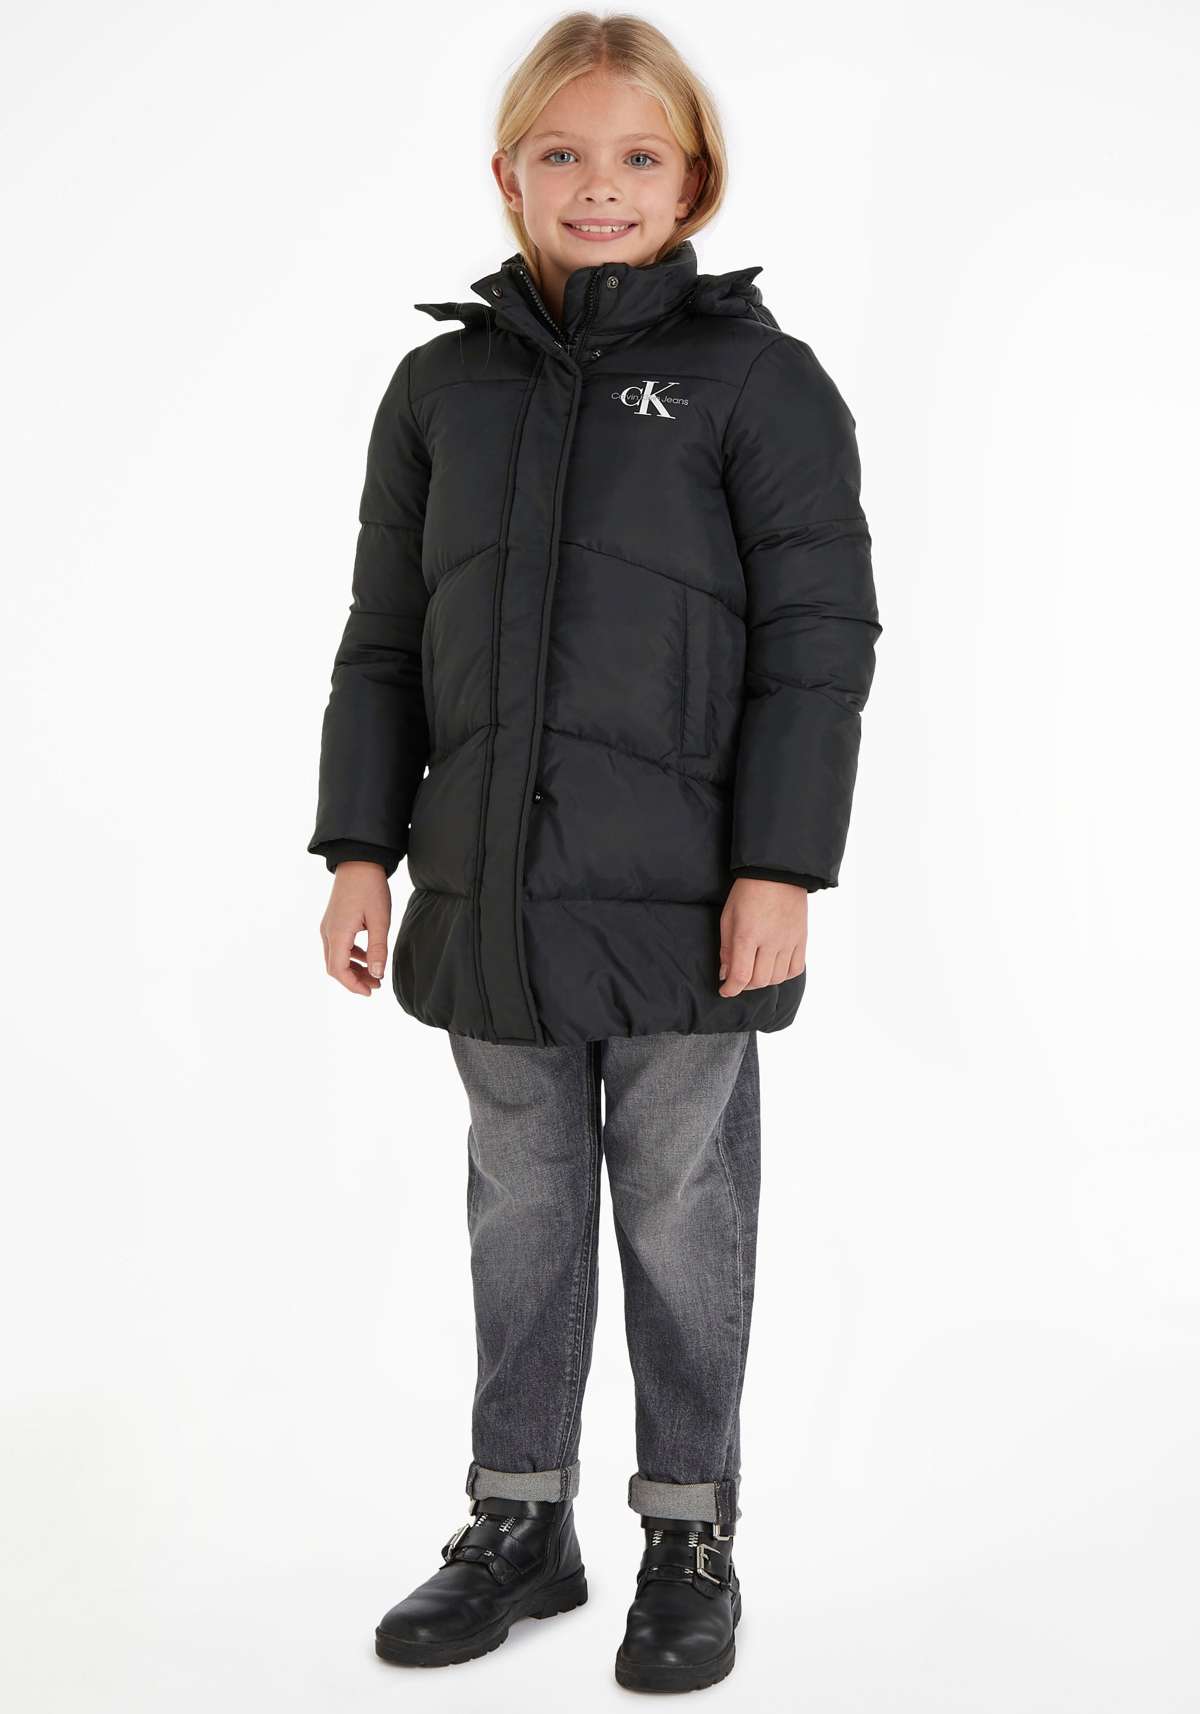 Стеганое пальто для детей до 16 лет и фирменный лейбл Calvin Klein.